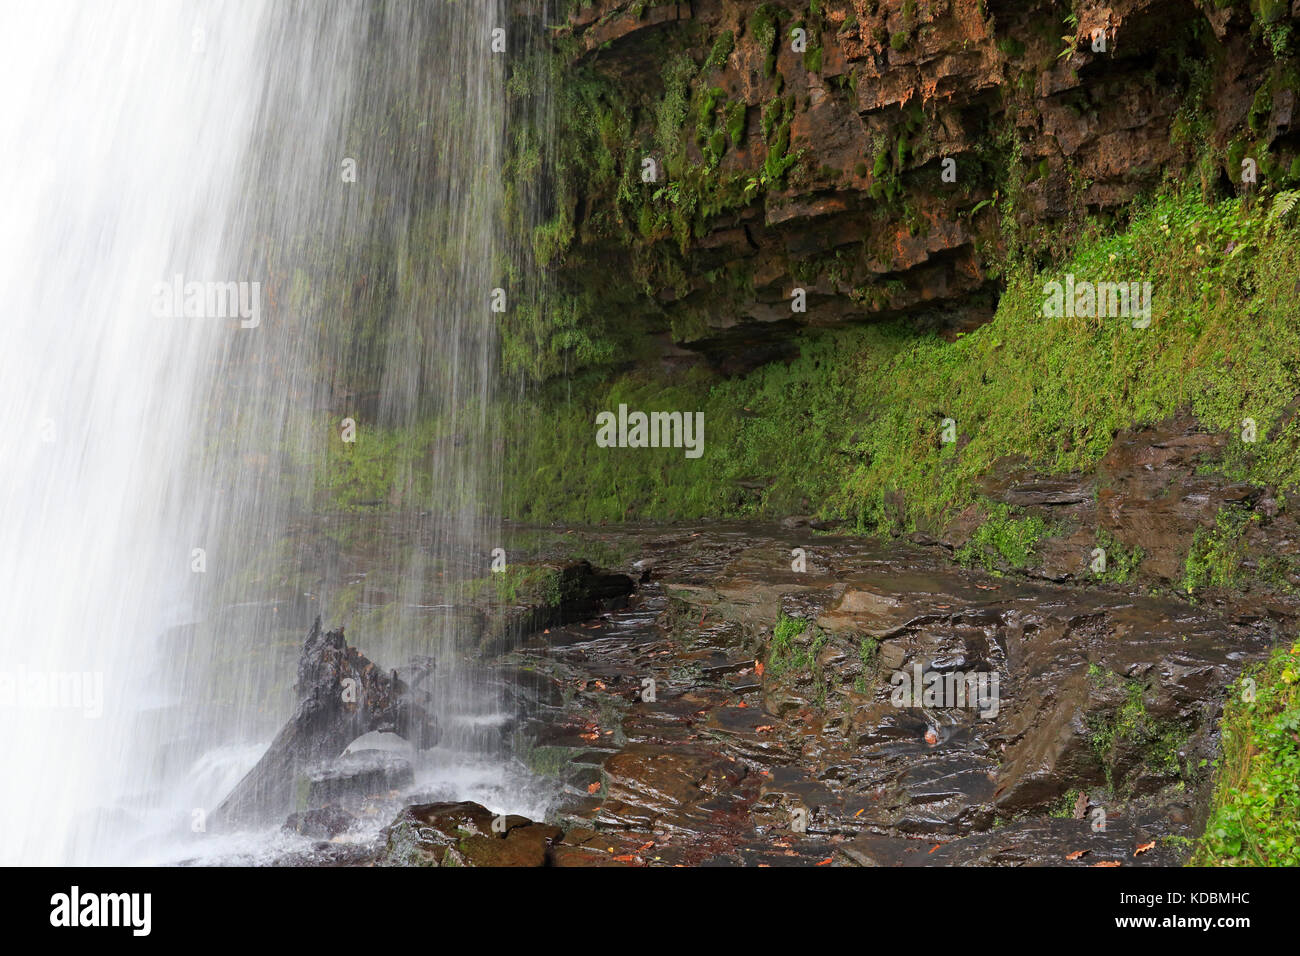 Sgwd yr eira cascade dans le parc national de Brecon beacon Banque D'Images